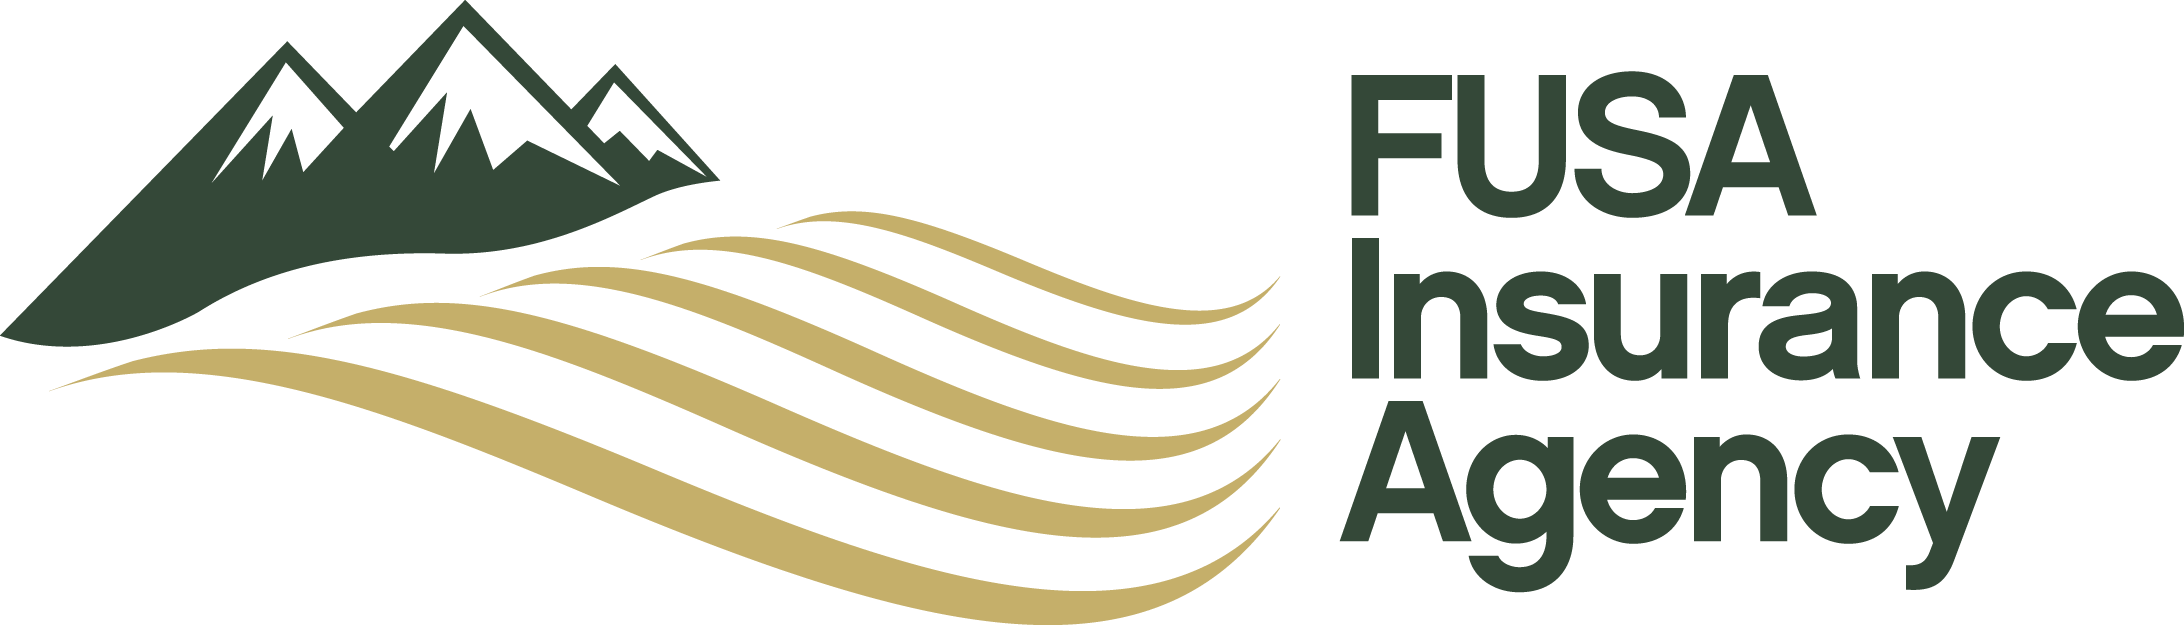 FUSA Insurance Agency